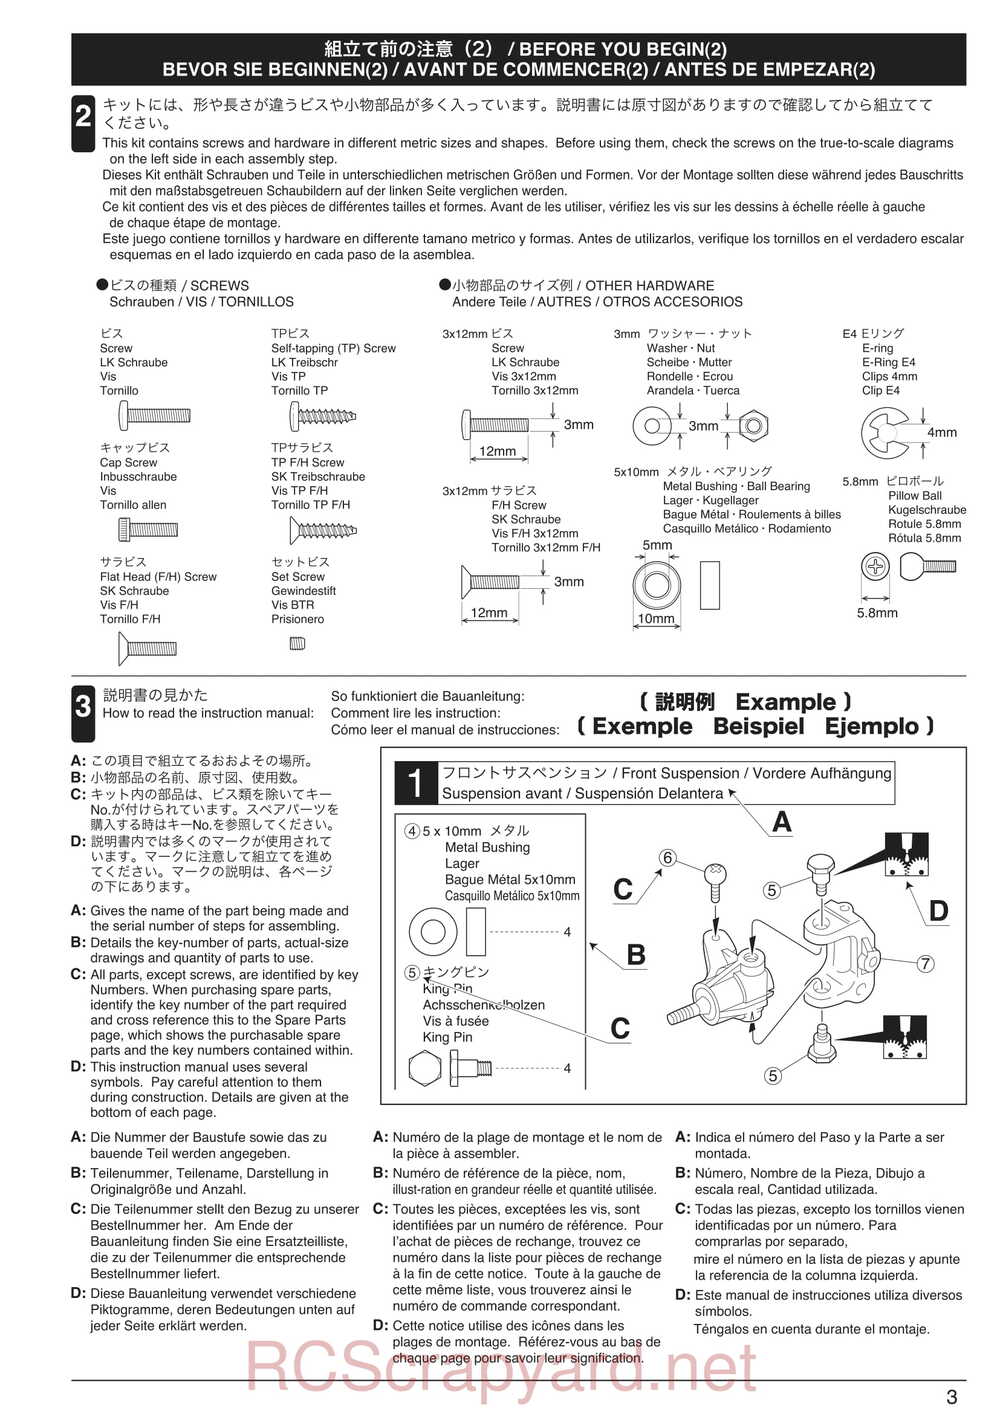 Kyosho - 30935 - Inferno GT2 VE Race-Spec - Manual - Page 03